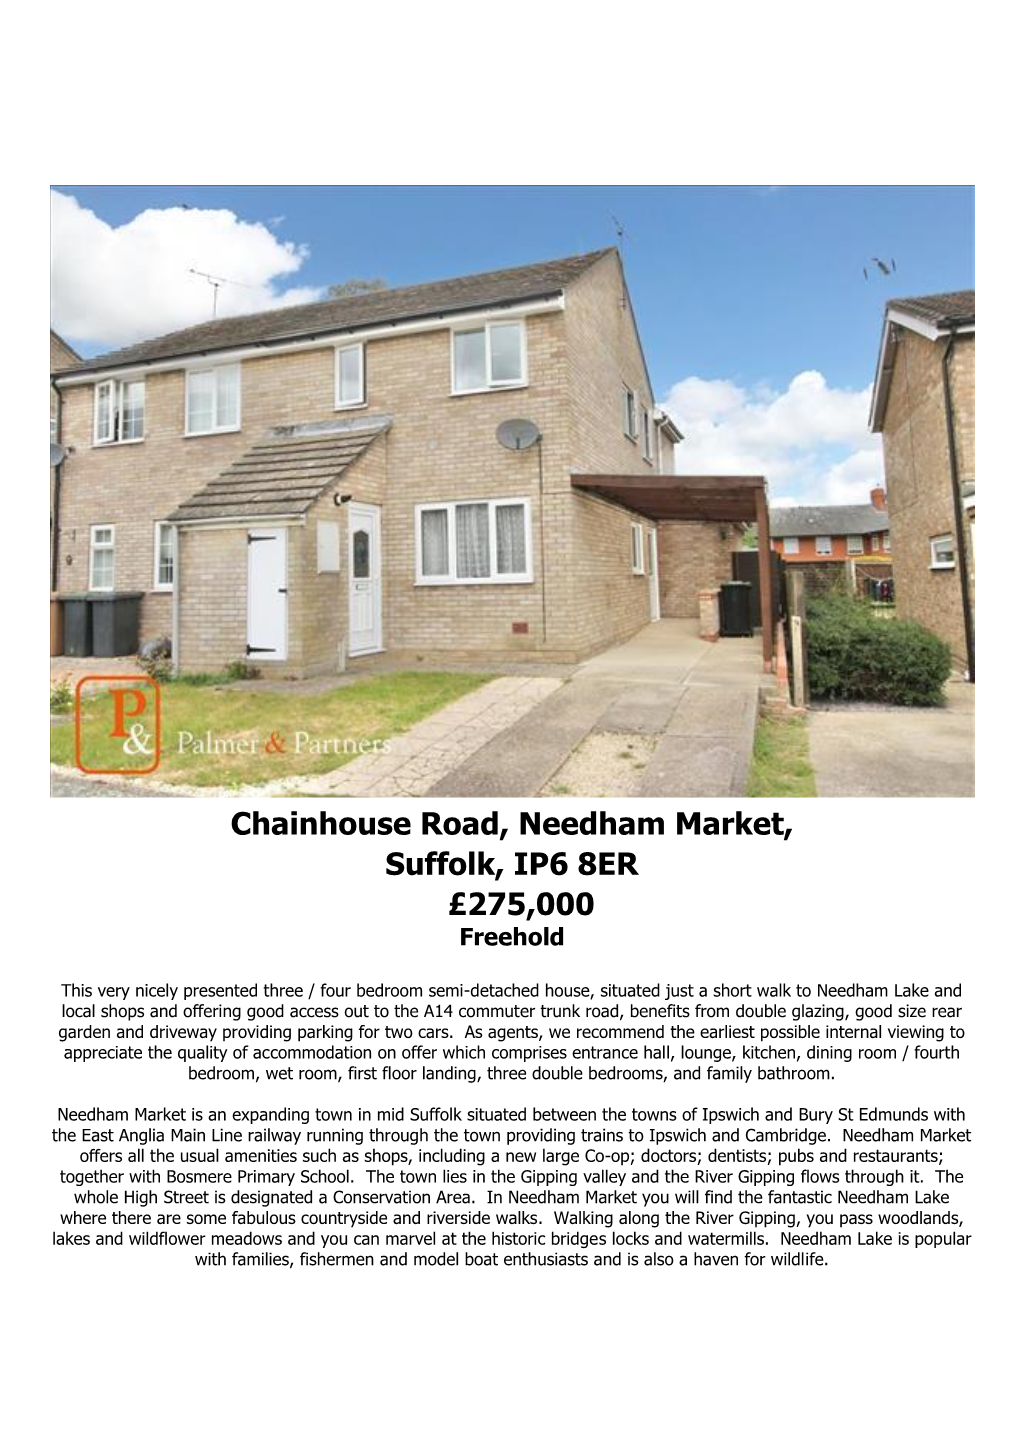 Chainhouse Road, Needham Market, Suffolk, IP6 8ER £275,000 Freehold